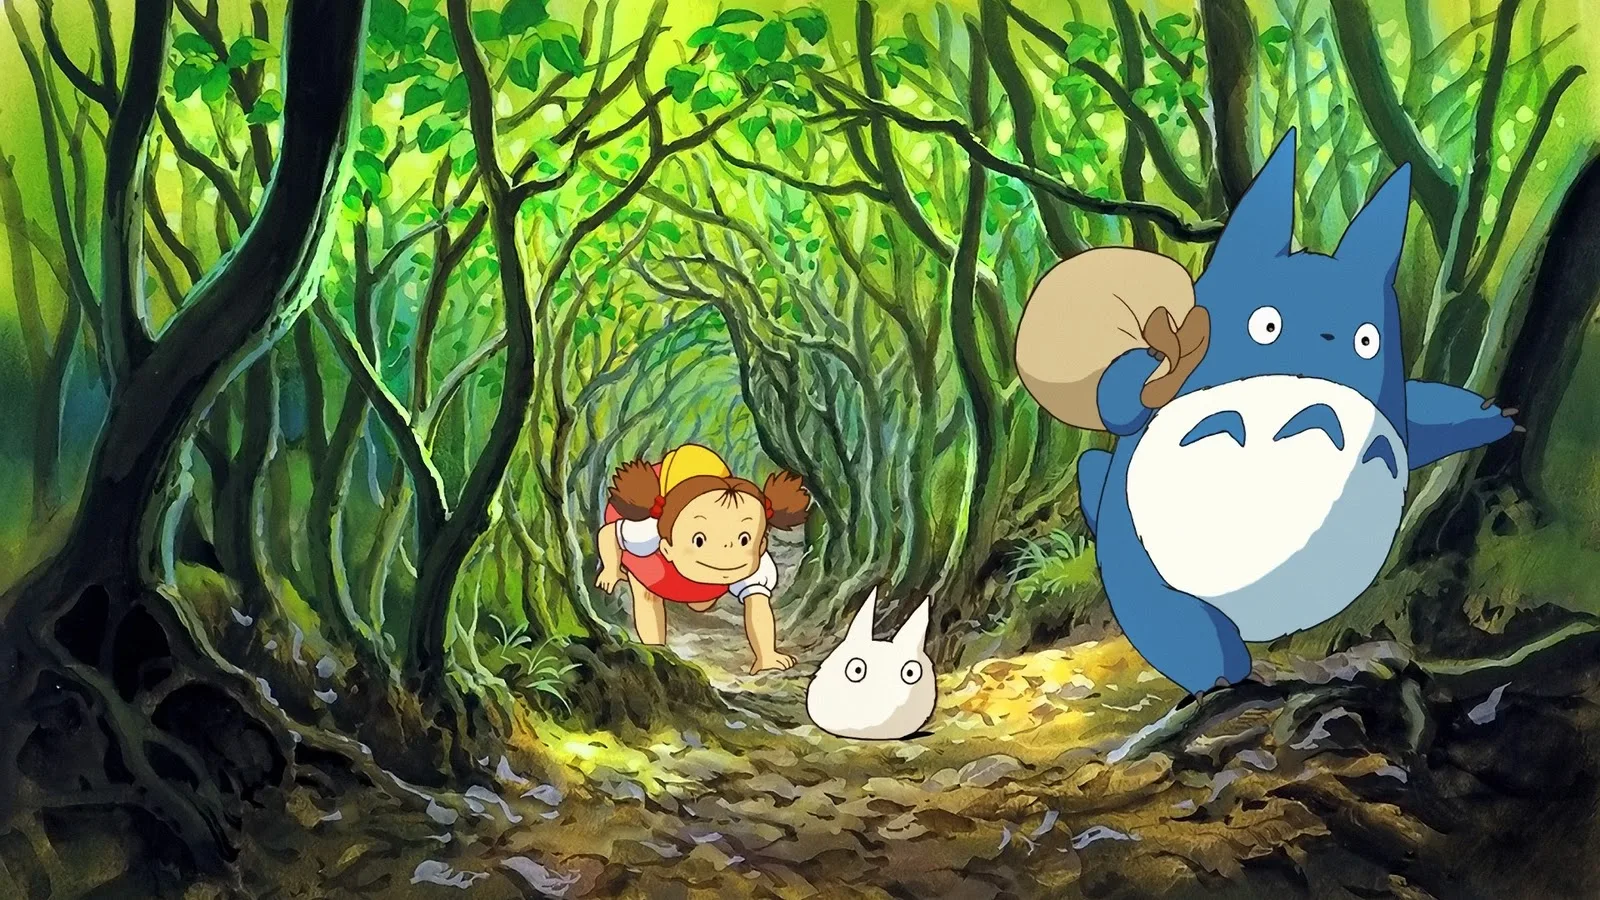 Incredible Studio Ghibli 720p Image